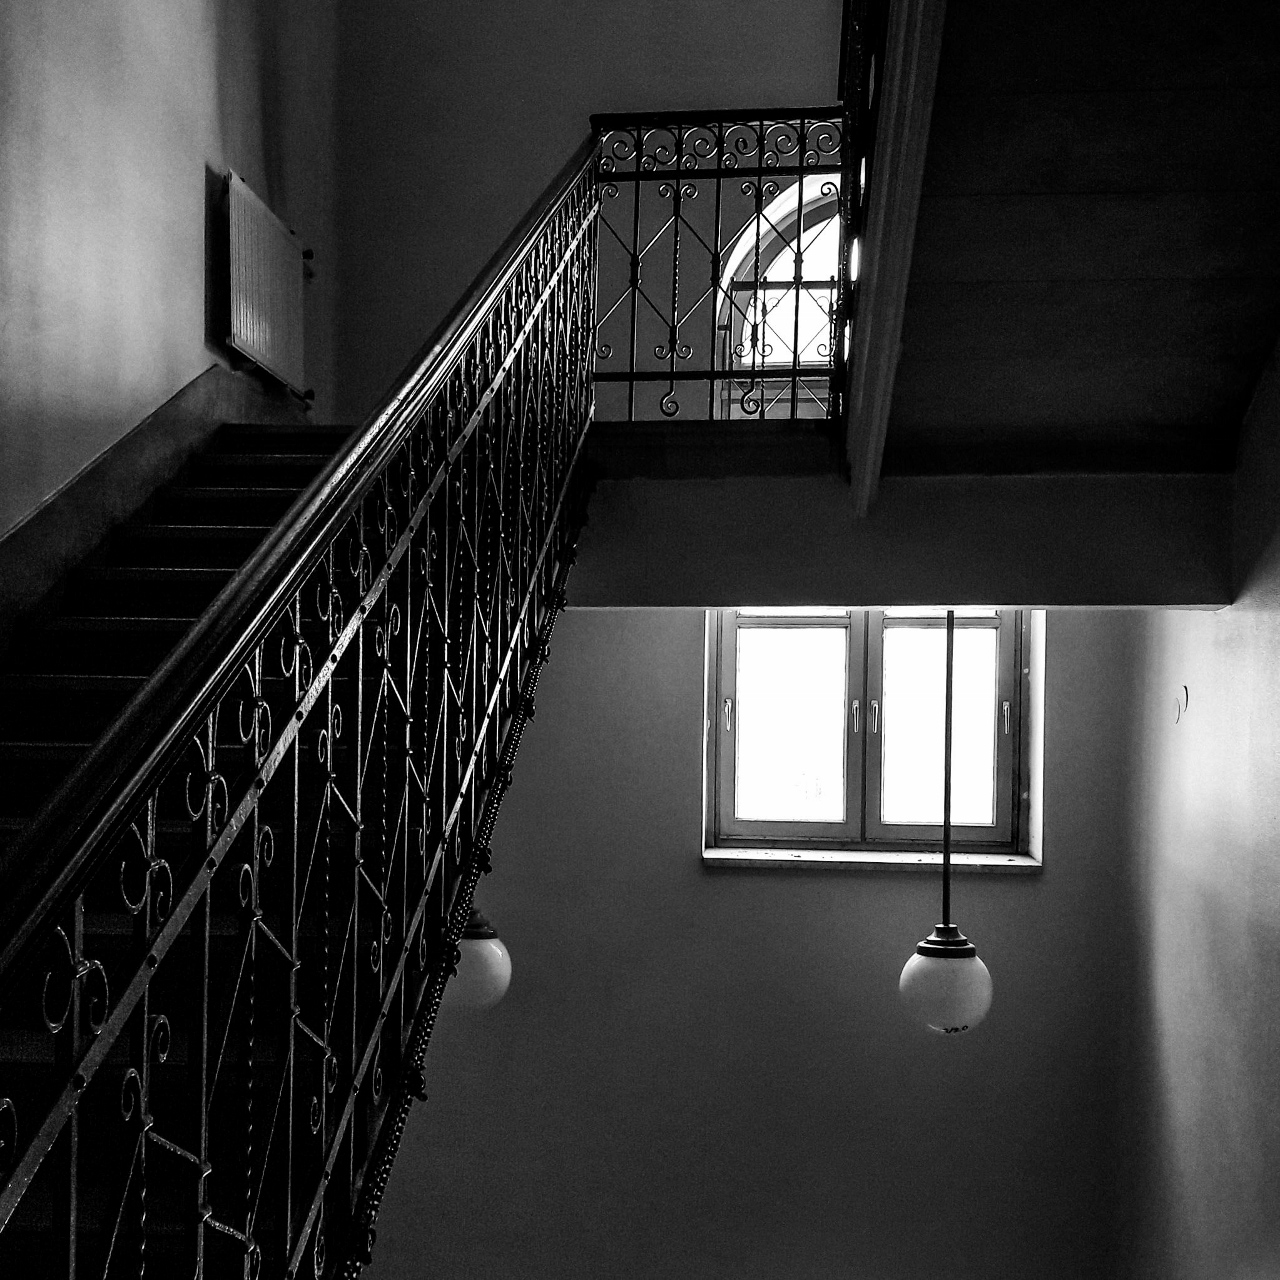 lépcsőház